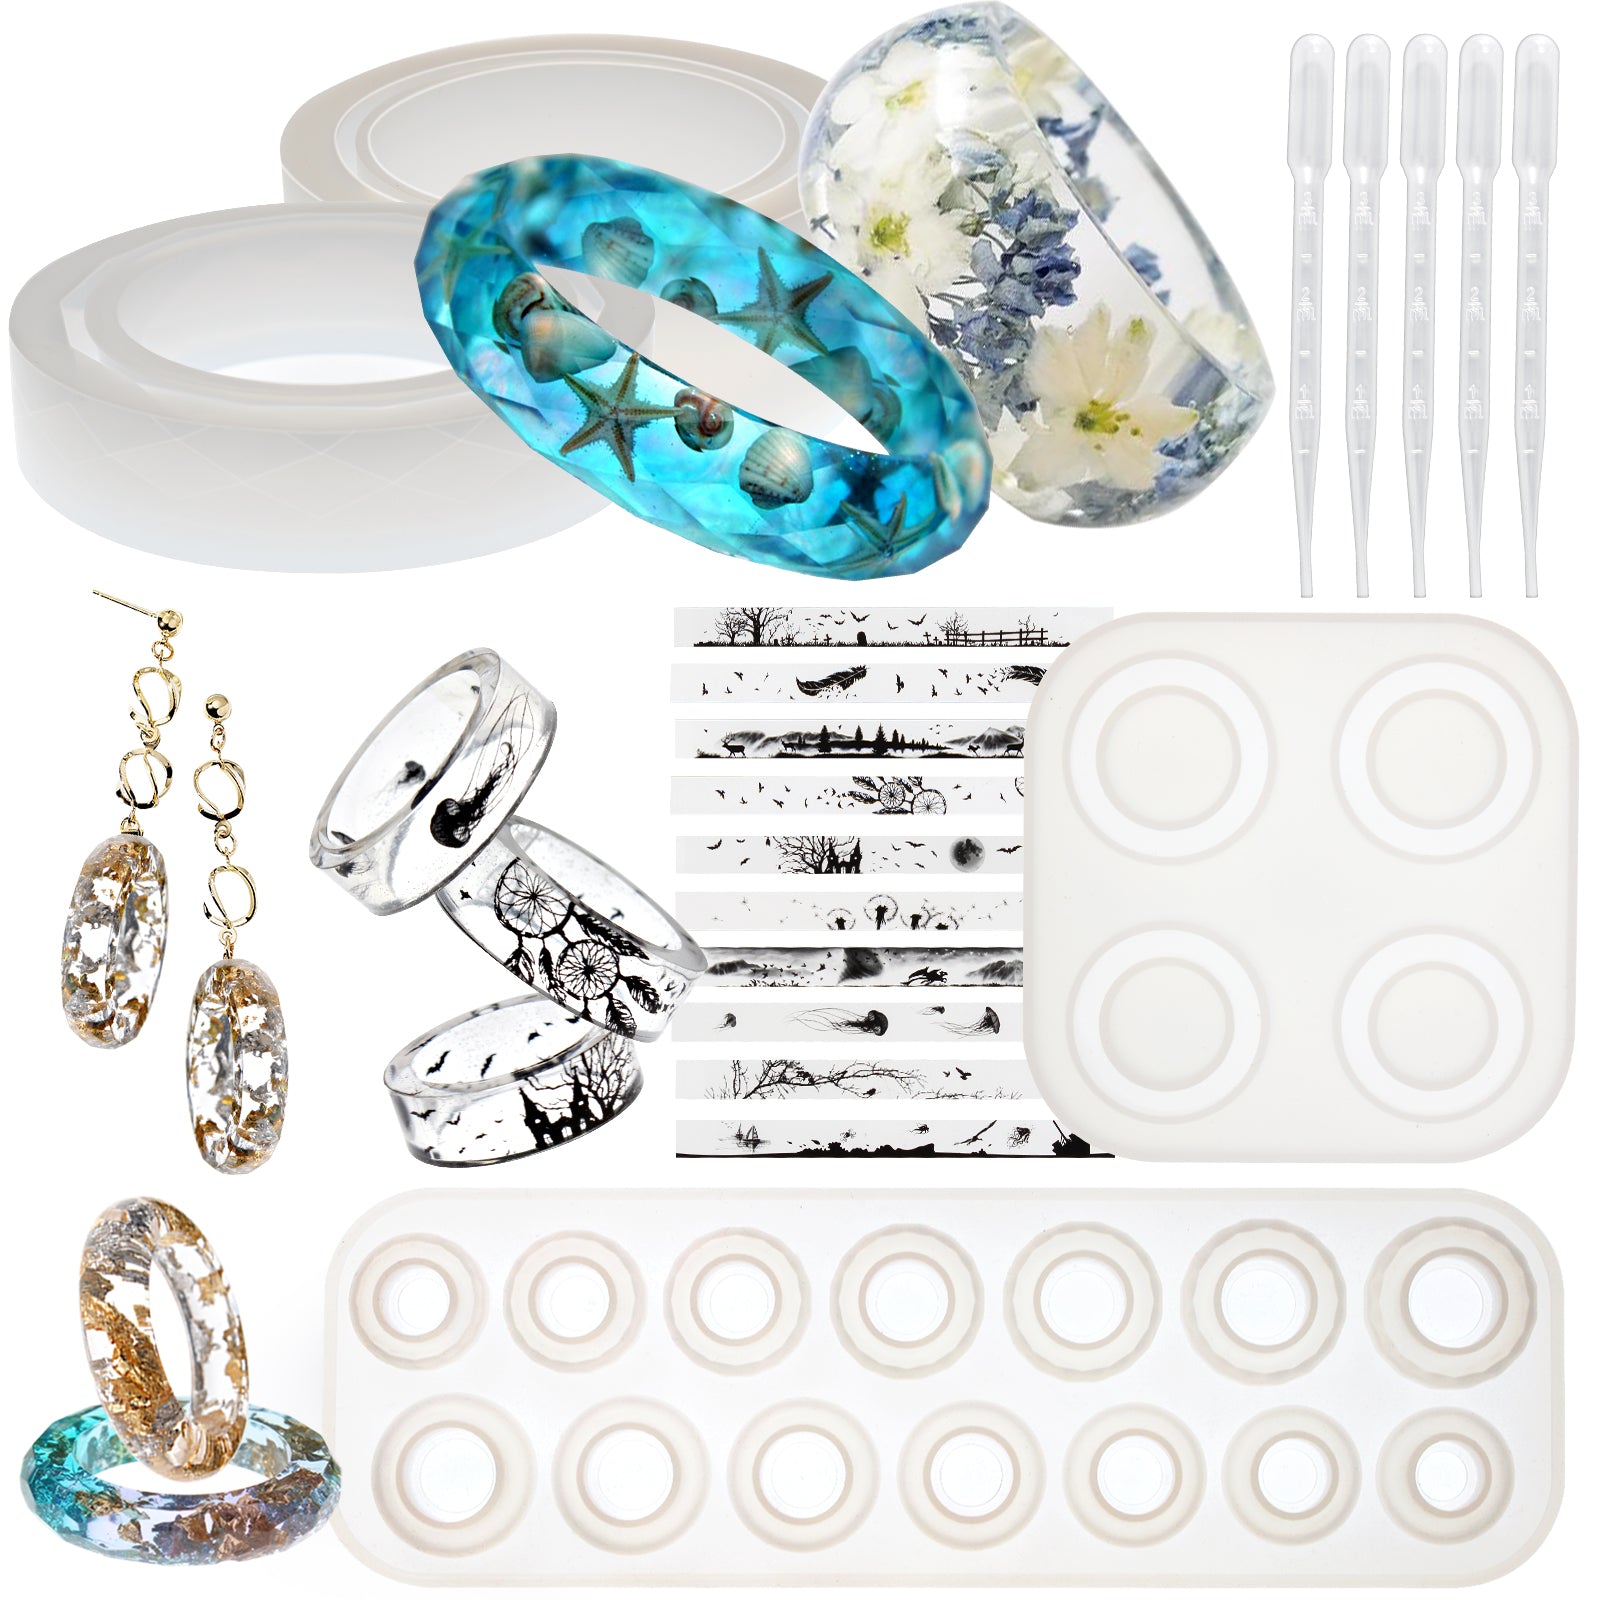 Funshowcase Bracelet and Ring Resin Jewelry Molds Larger Sizes Set 19 Kits